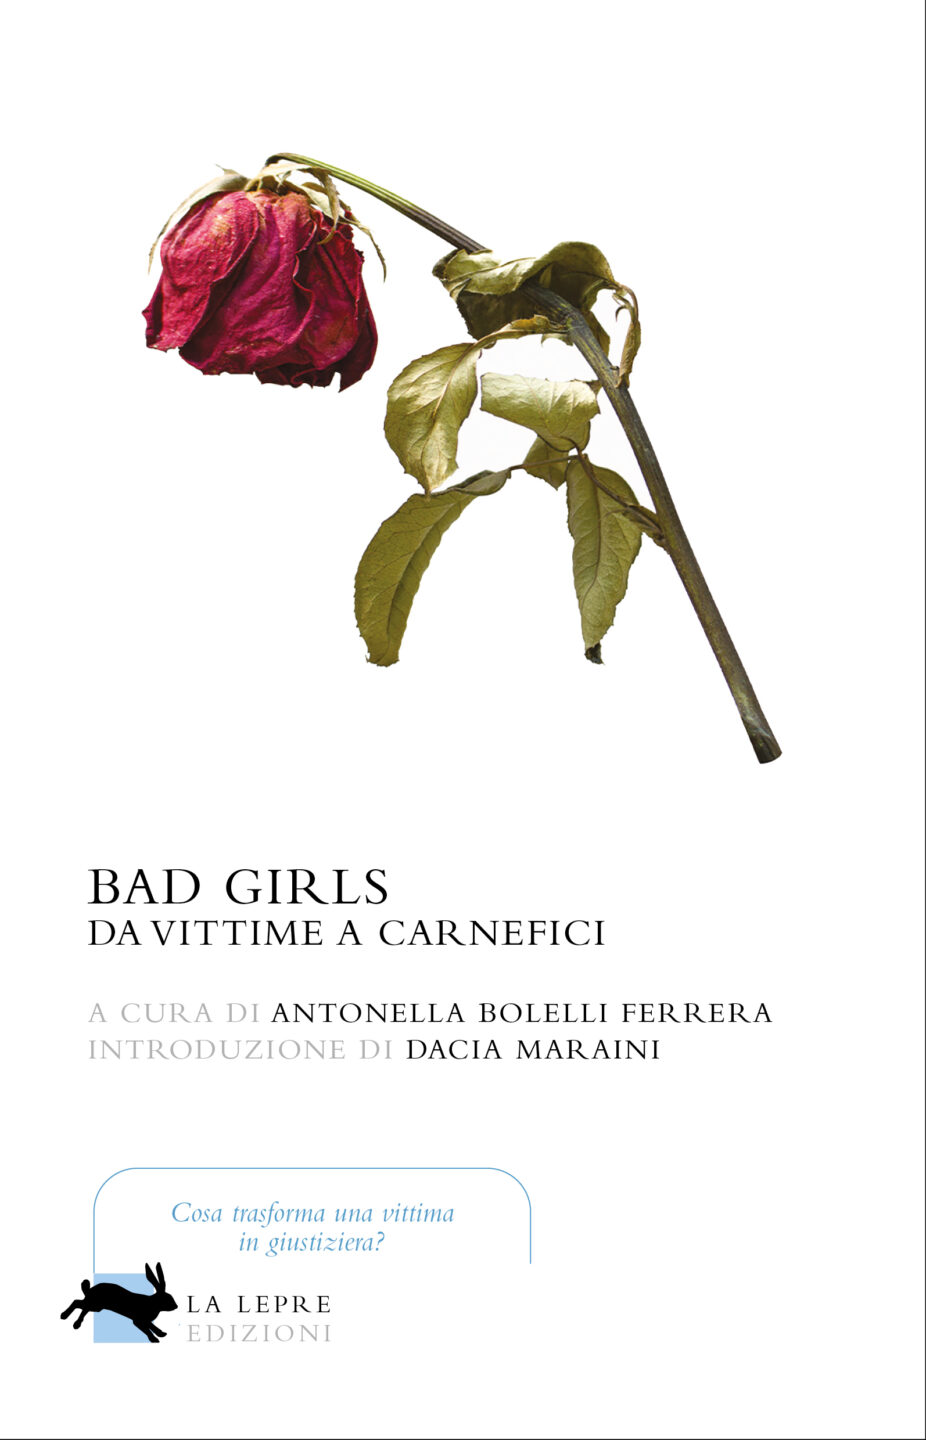 "Bad girls. Da vittime a carnefici"